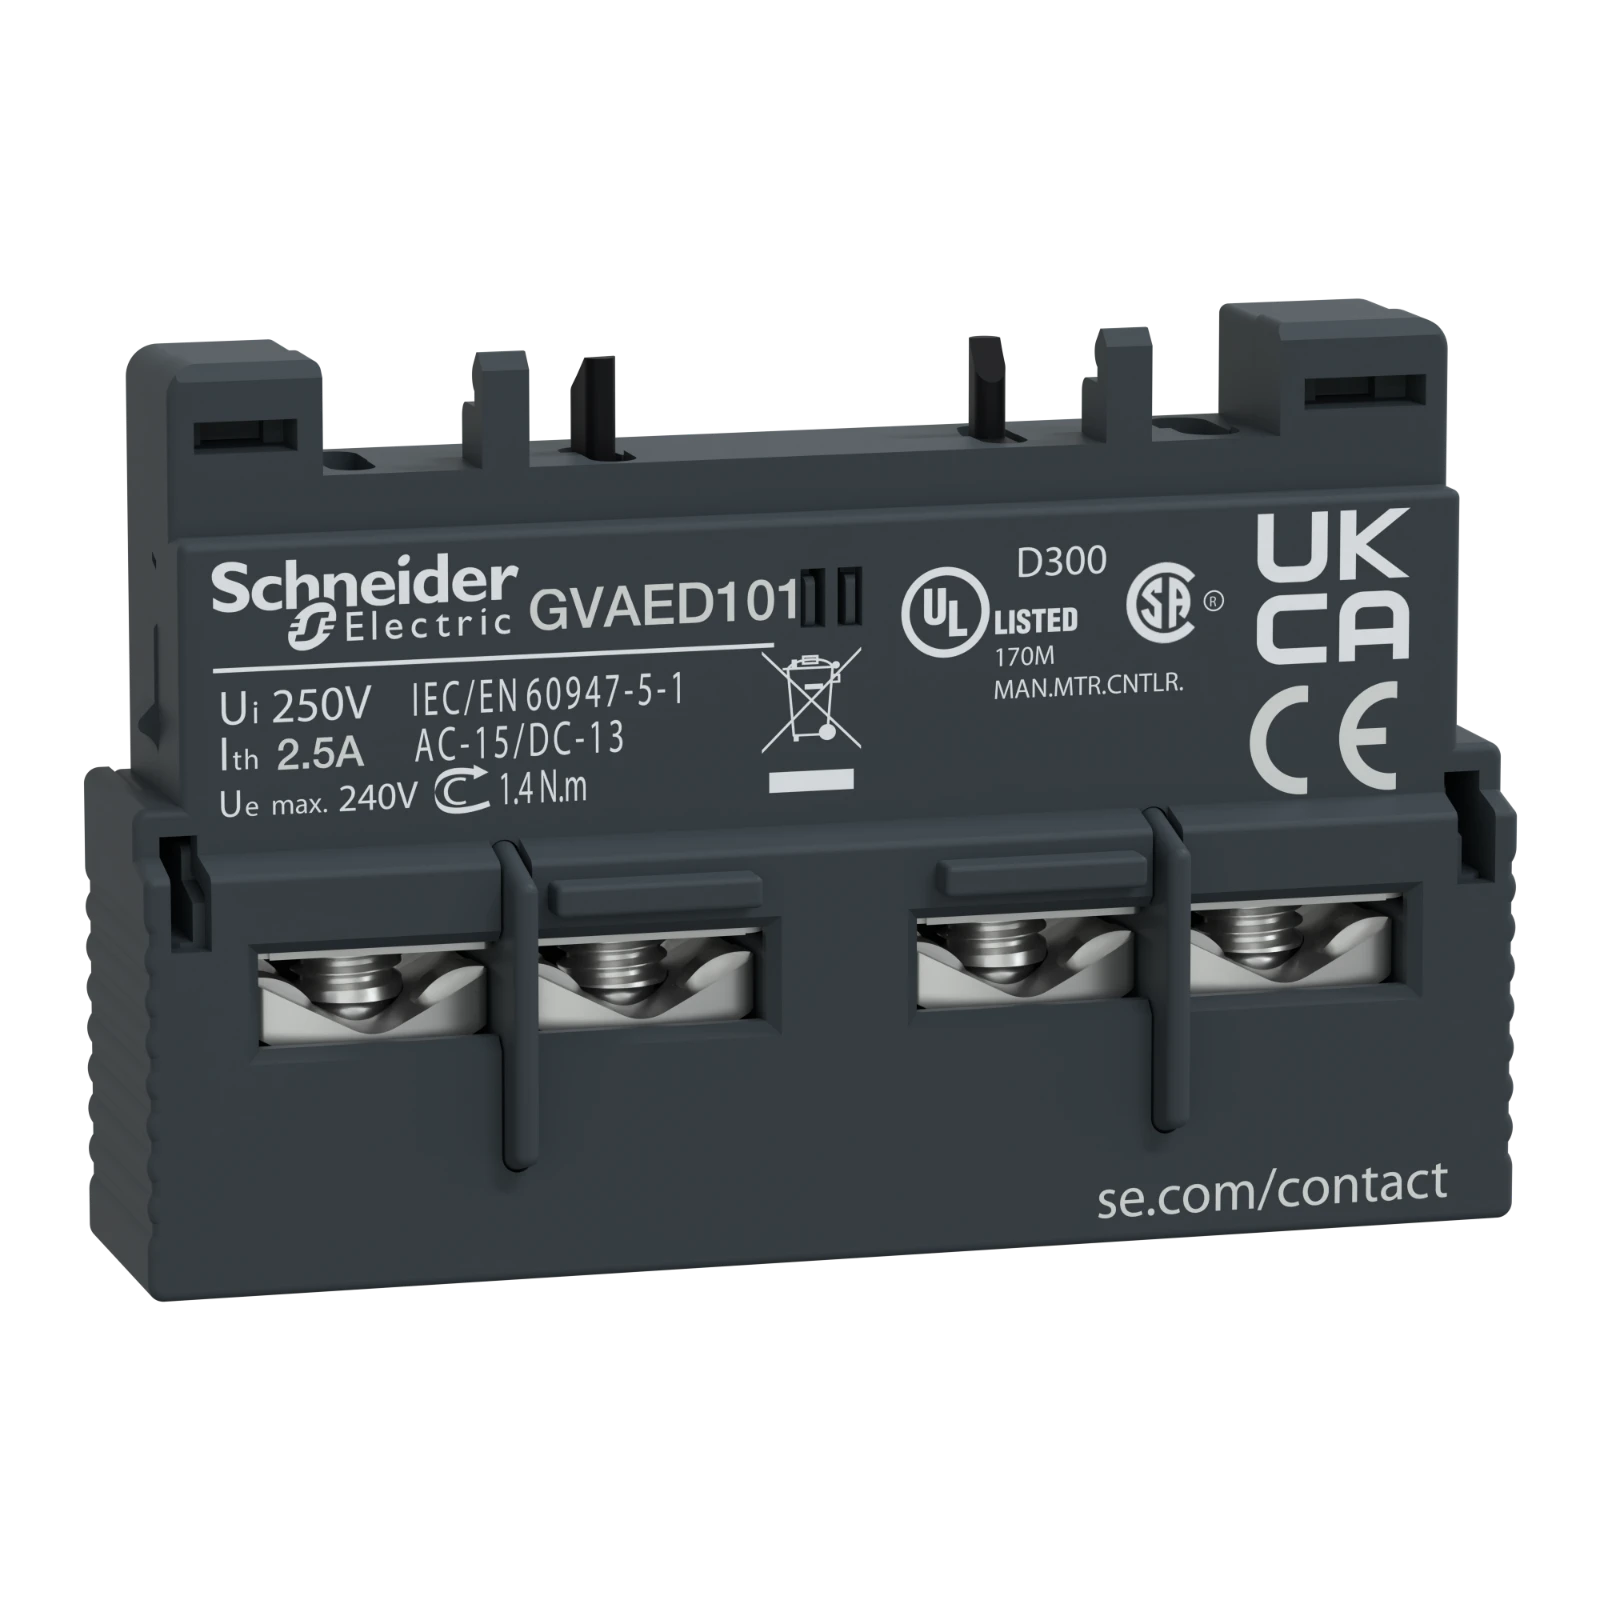 1192540 - Schneider Electric GVAED101